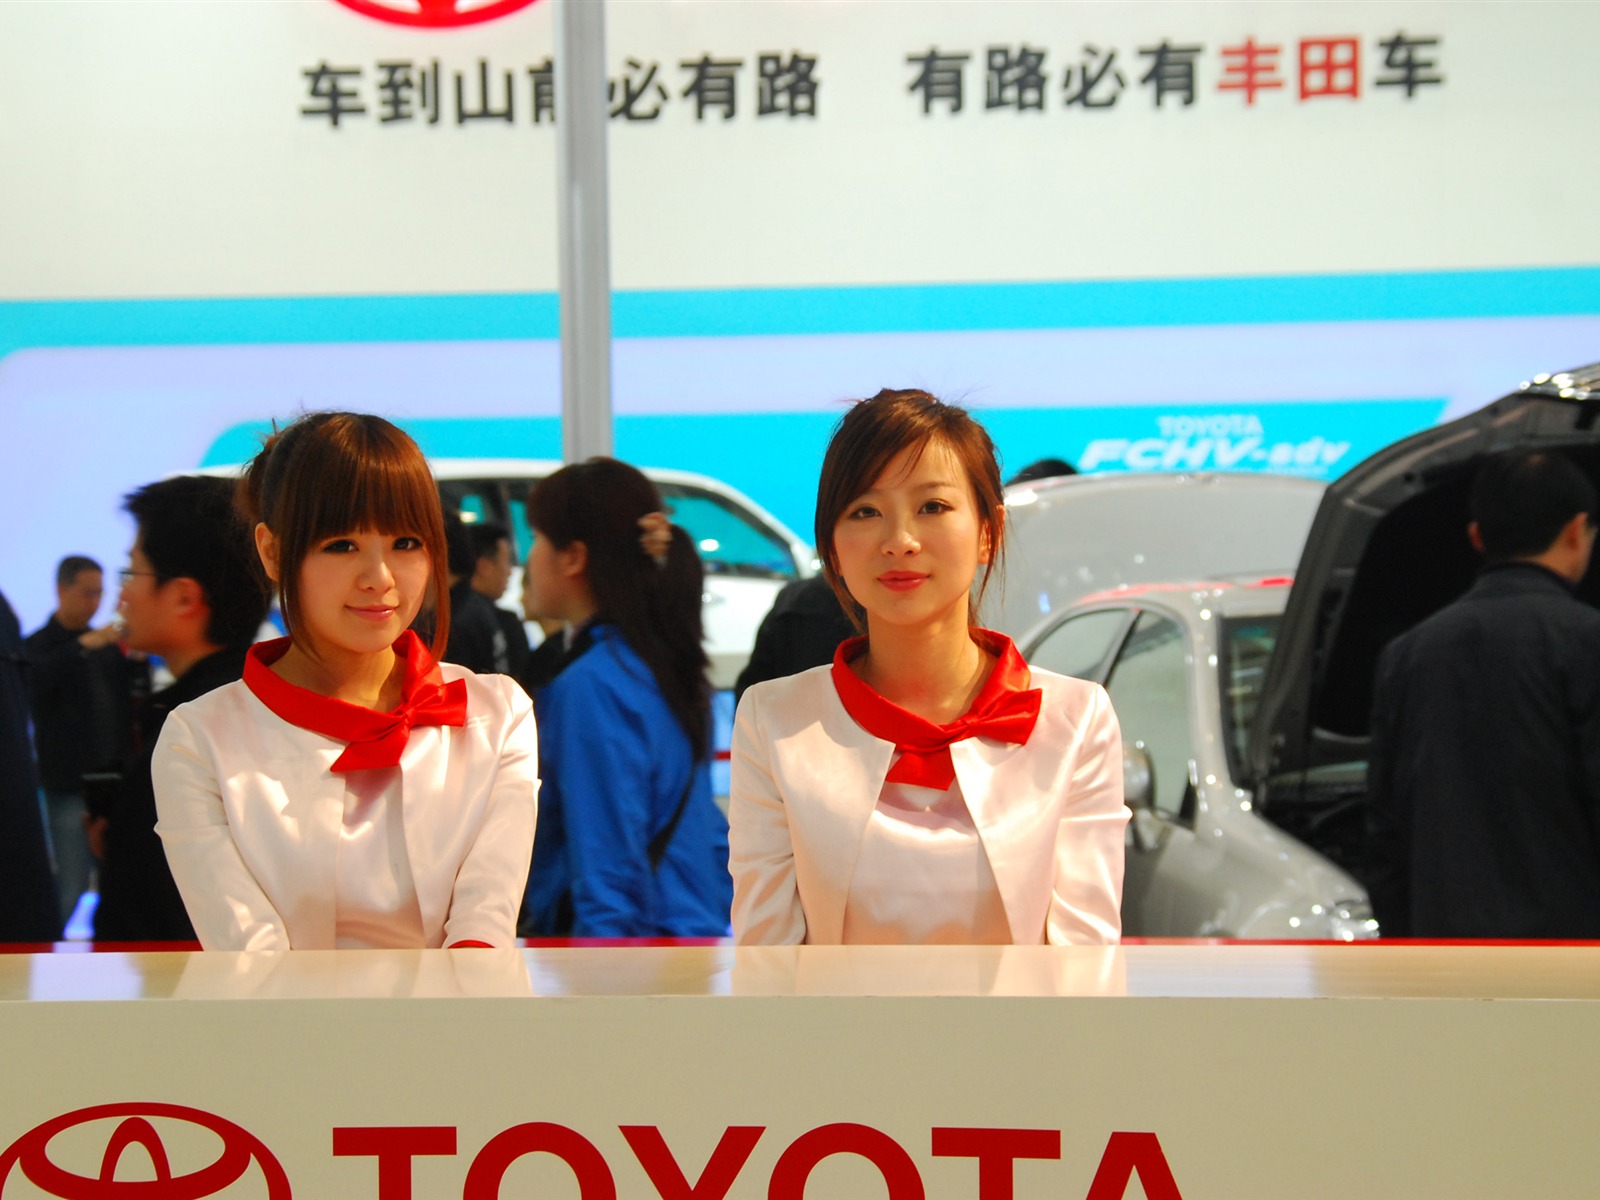 2010 v Pekingu mezinárodní automobilové výstavy (3) (z321x123 práce) #25 - 1600x1200